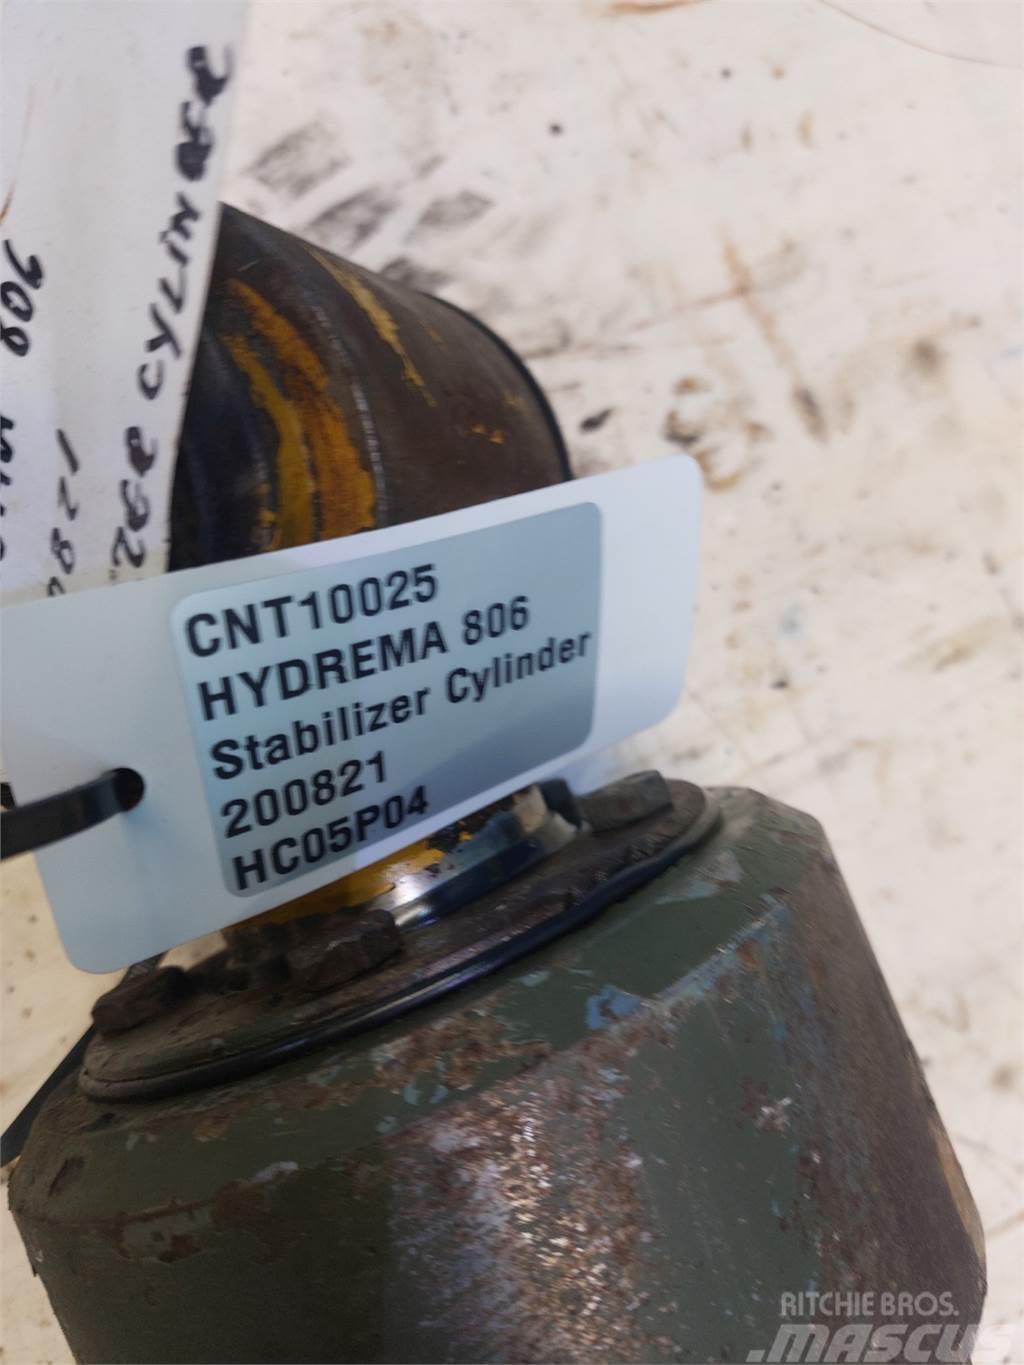 Hydrema 806 Outros componentes